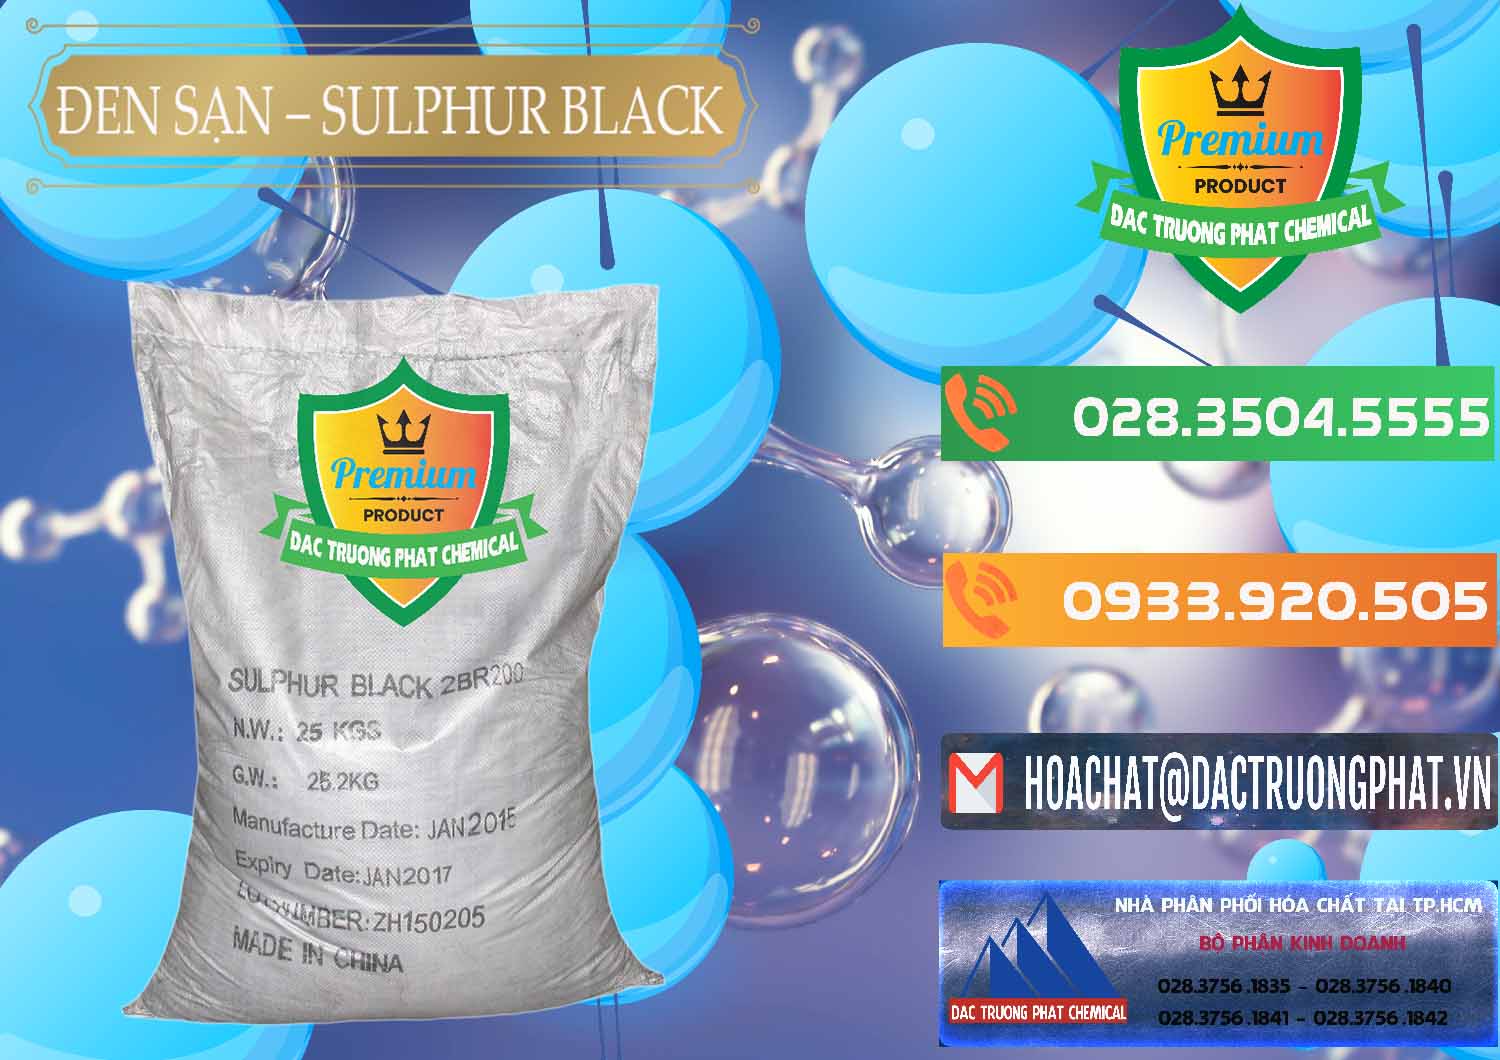 Cty bán _ cung cấp Đen Sạn – Sulphur Black Trung Quốc China - 0062 - Chuyên cung cấp _ phân phối hóa chất tại TP.HCM - hoachatxulynuoc.com.vn